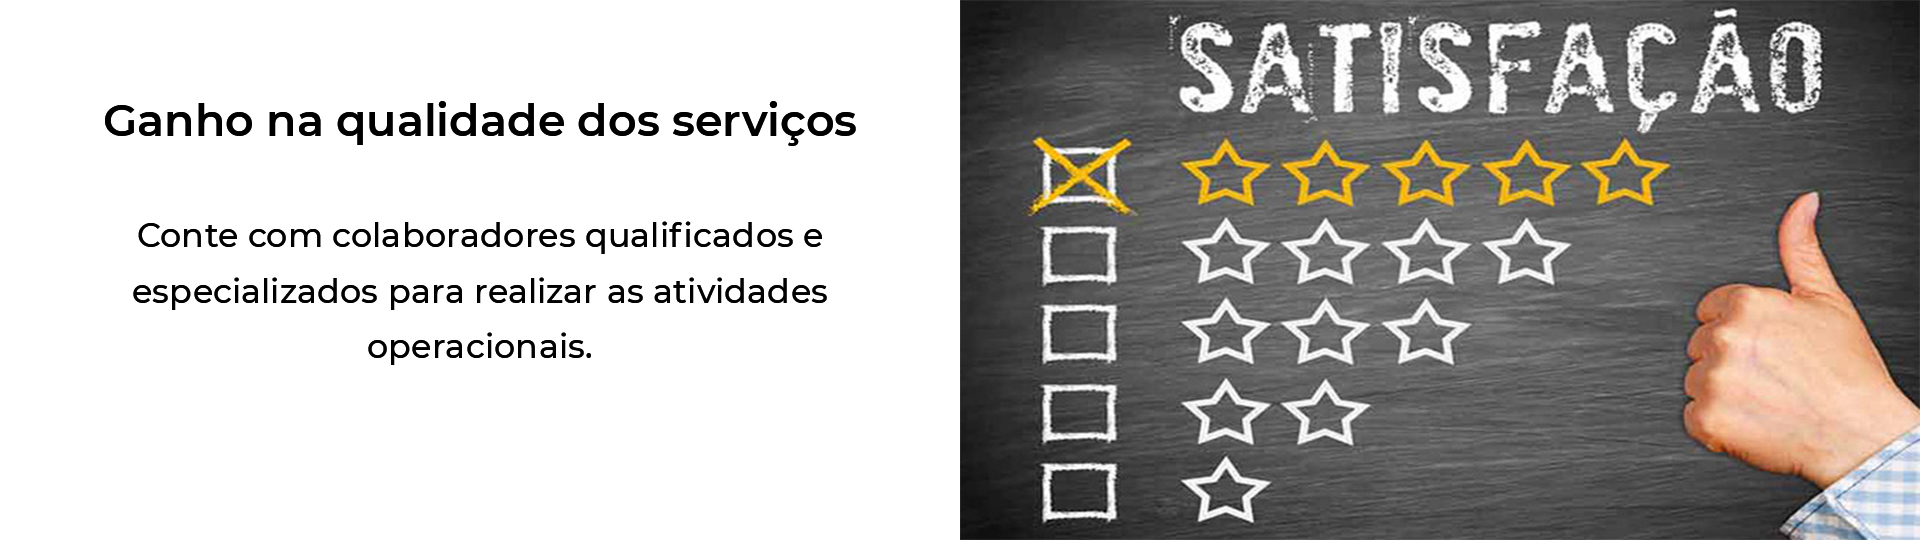 Site_Qualidade Serviços_1920x540